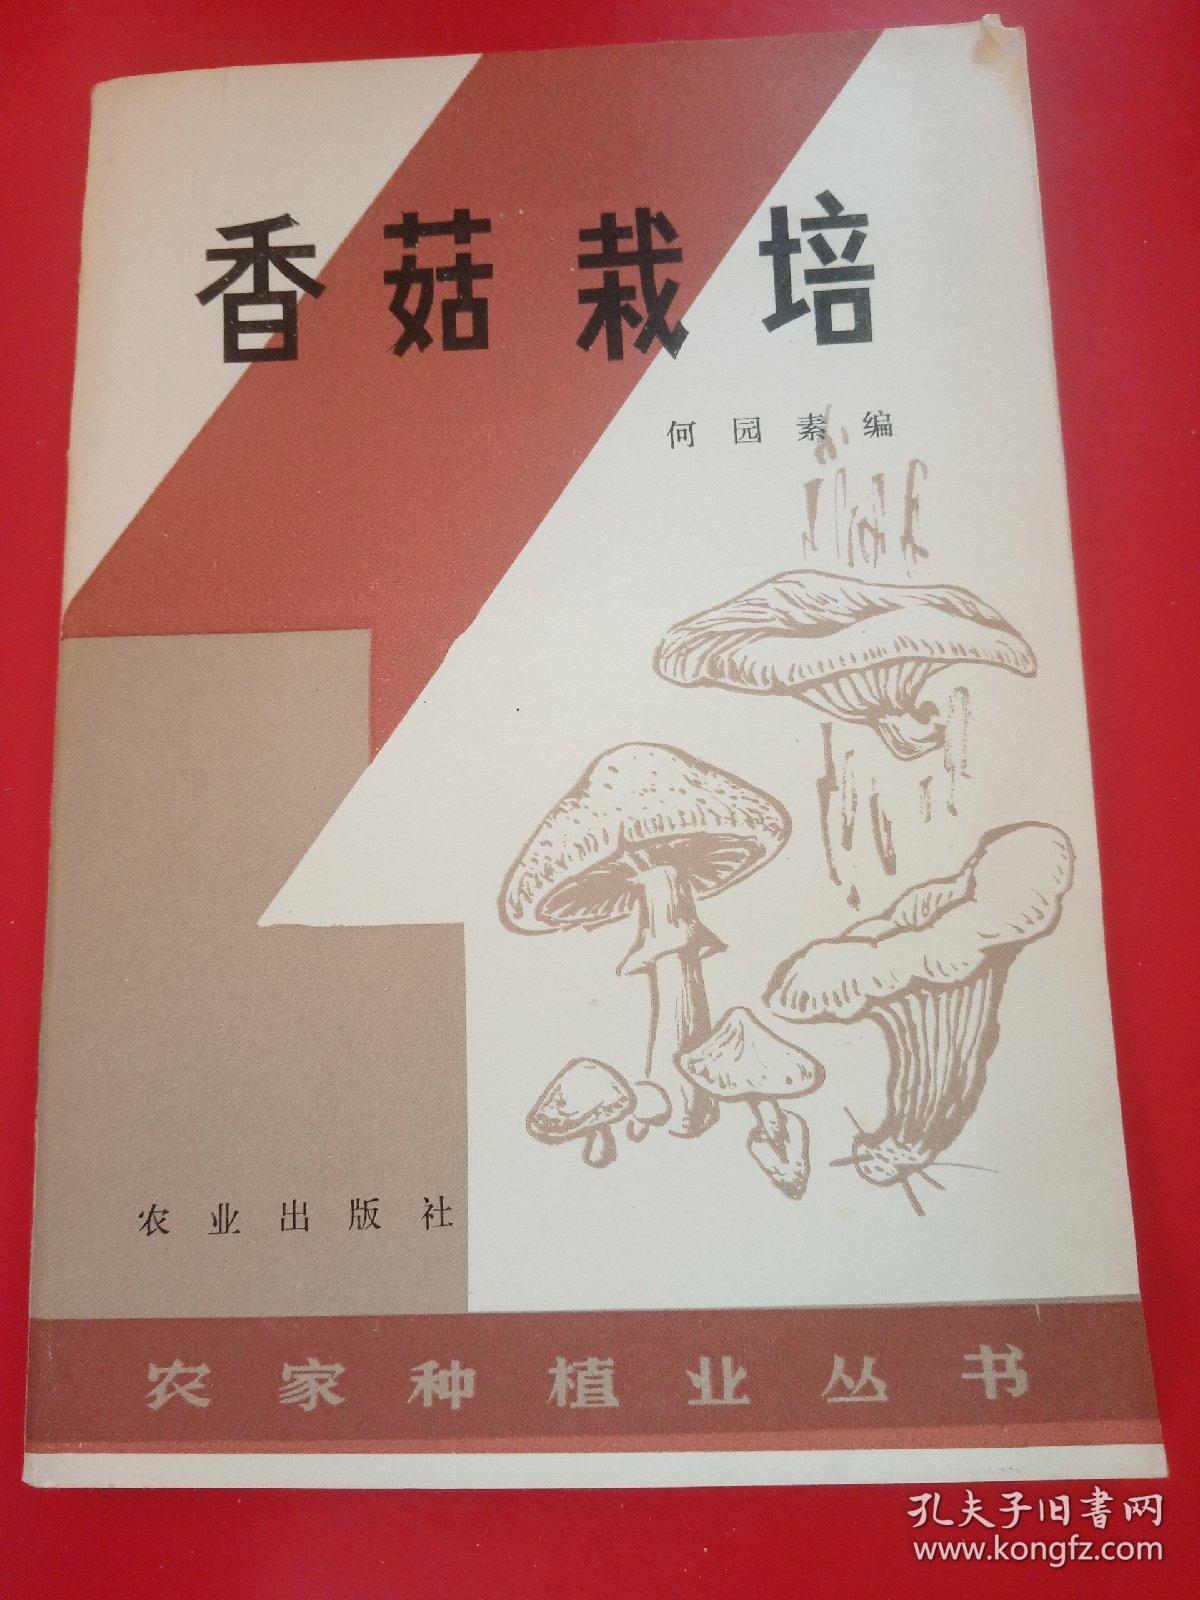 香菇栽培
1982年
一版一印